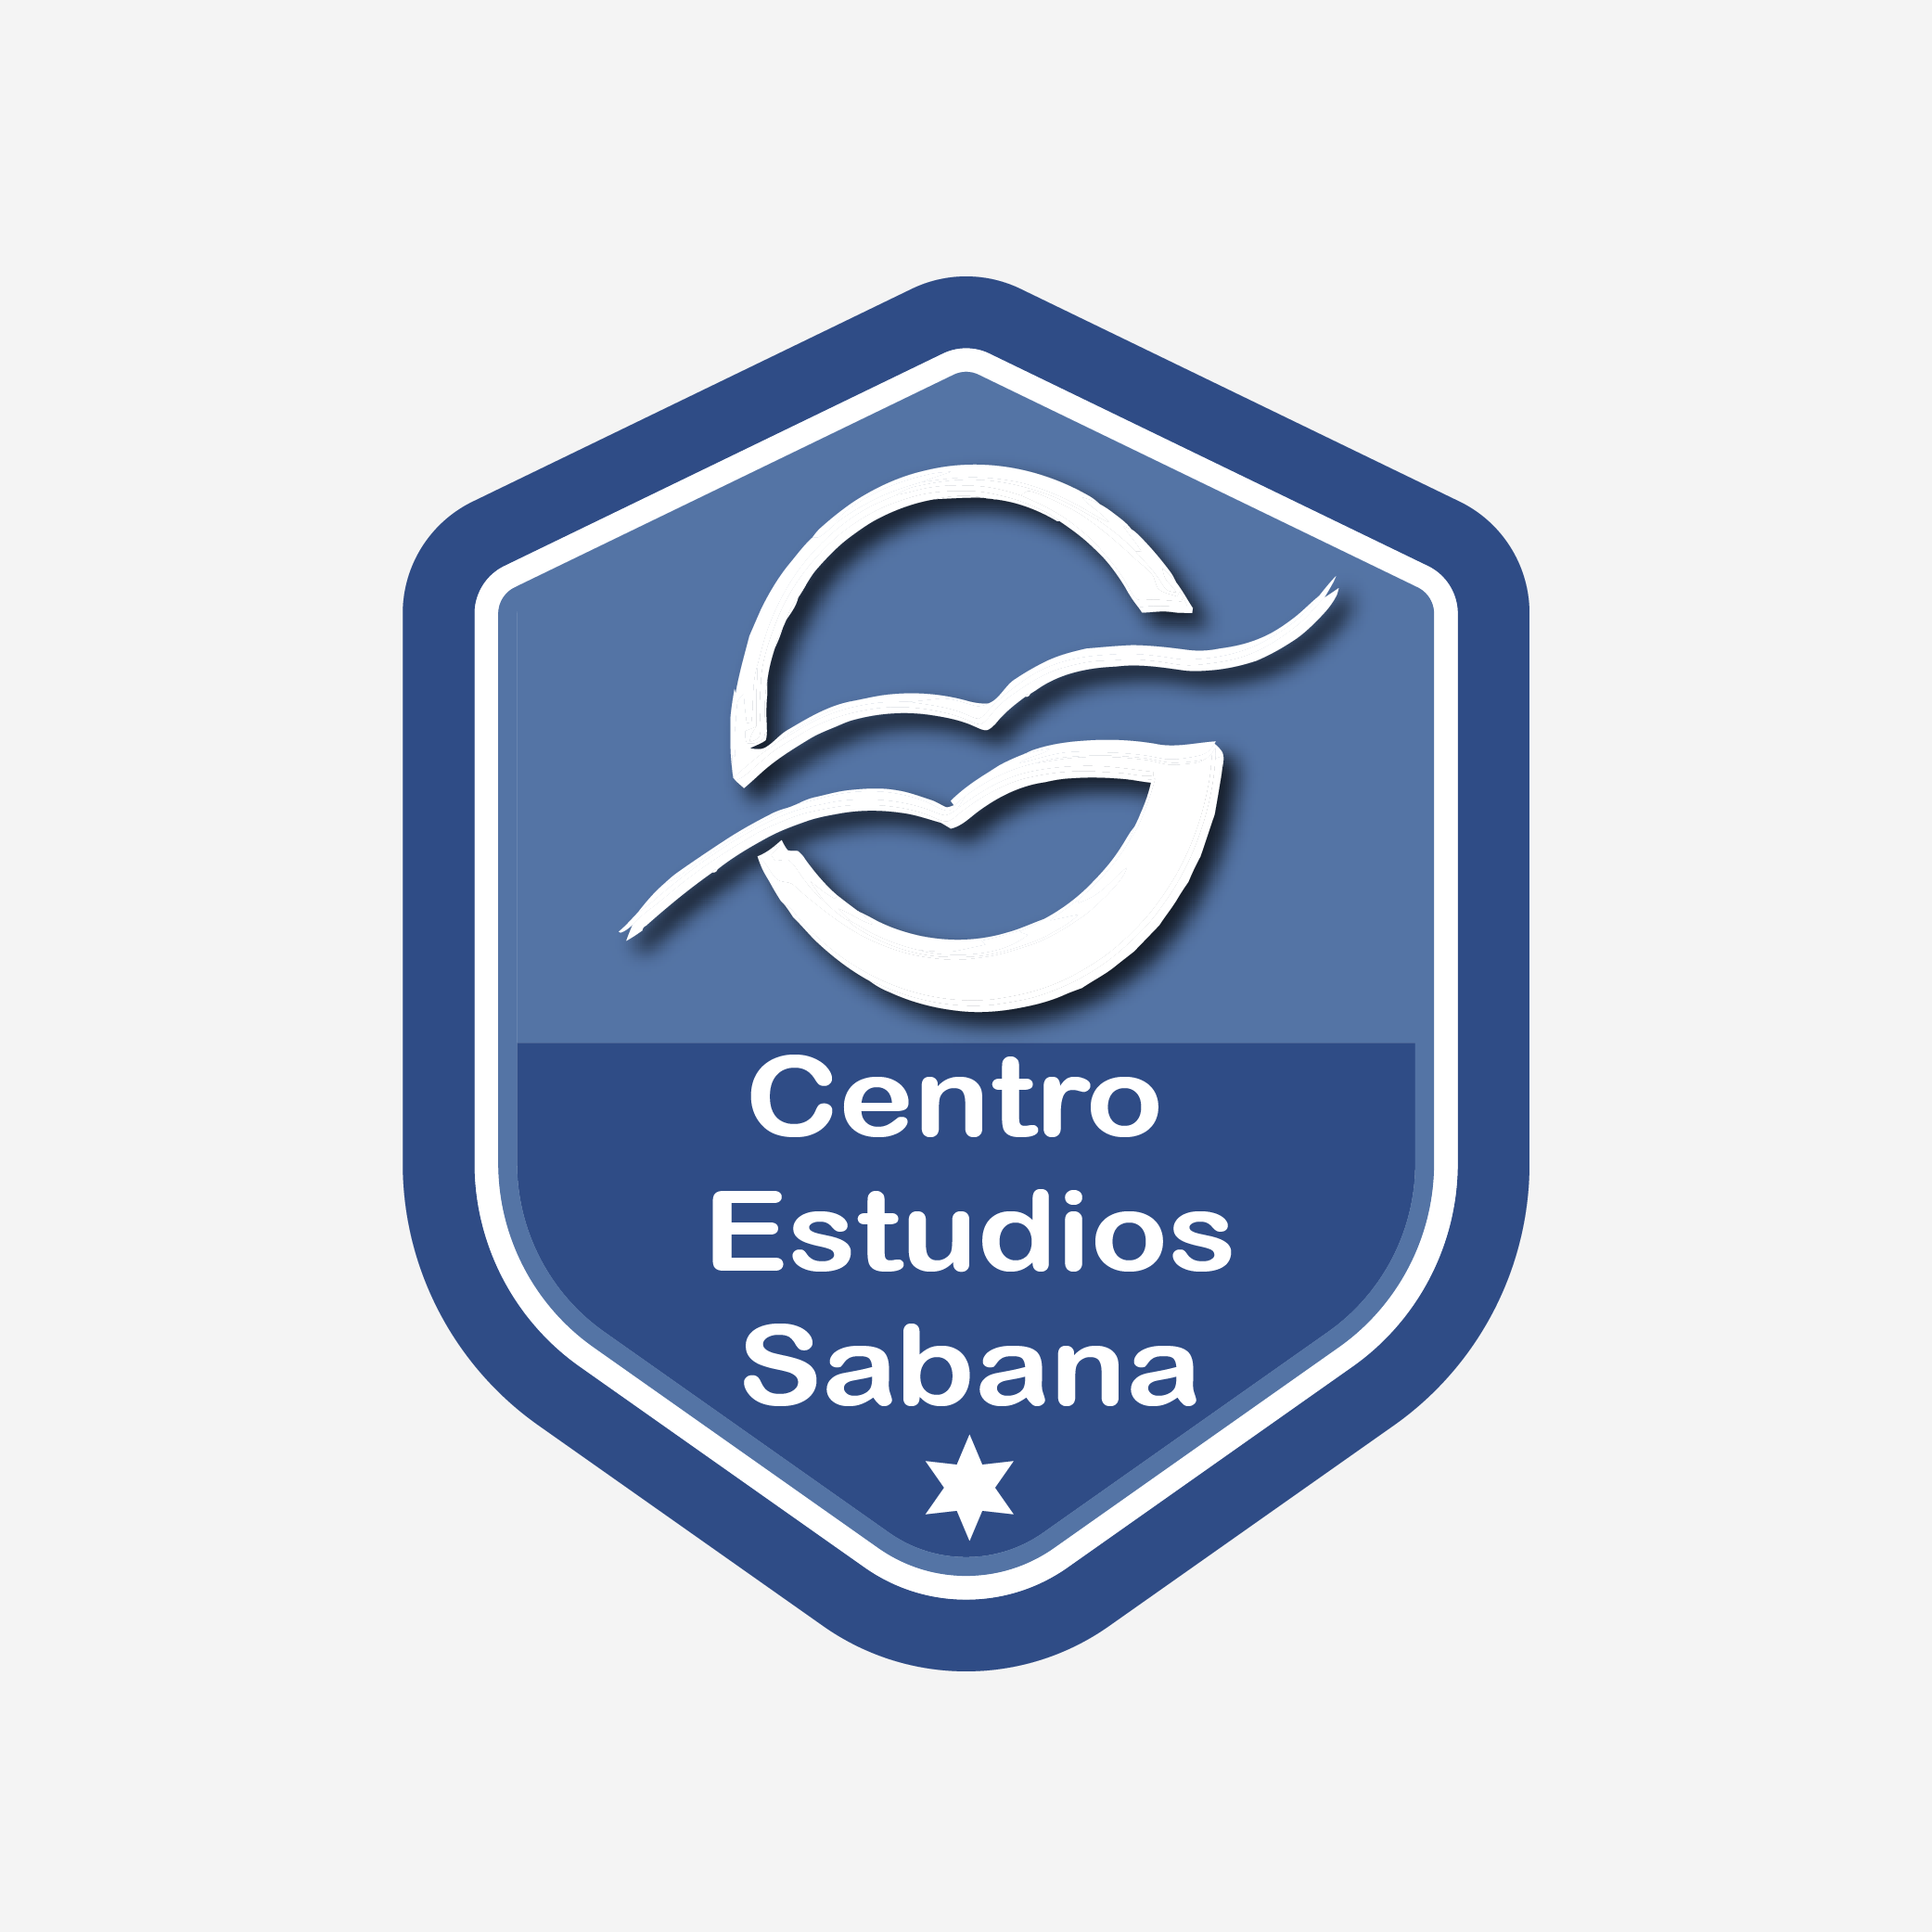 Centro Estudios Sabana